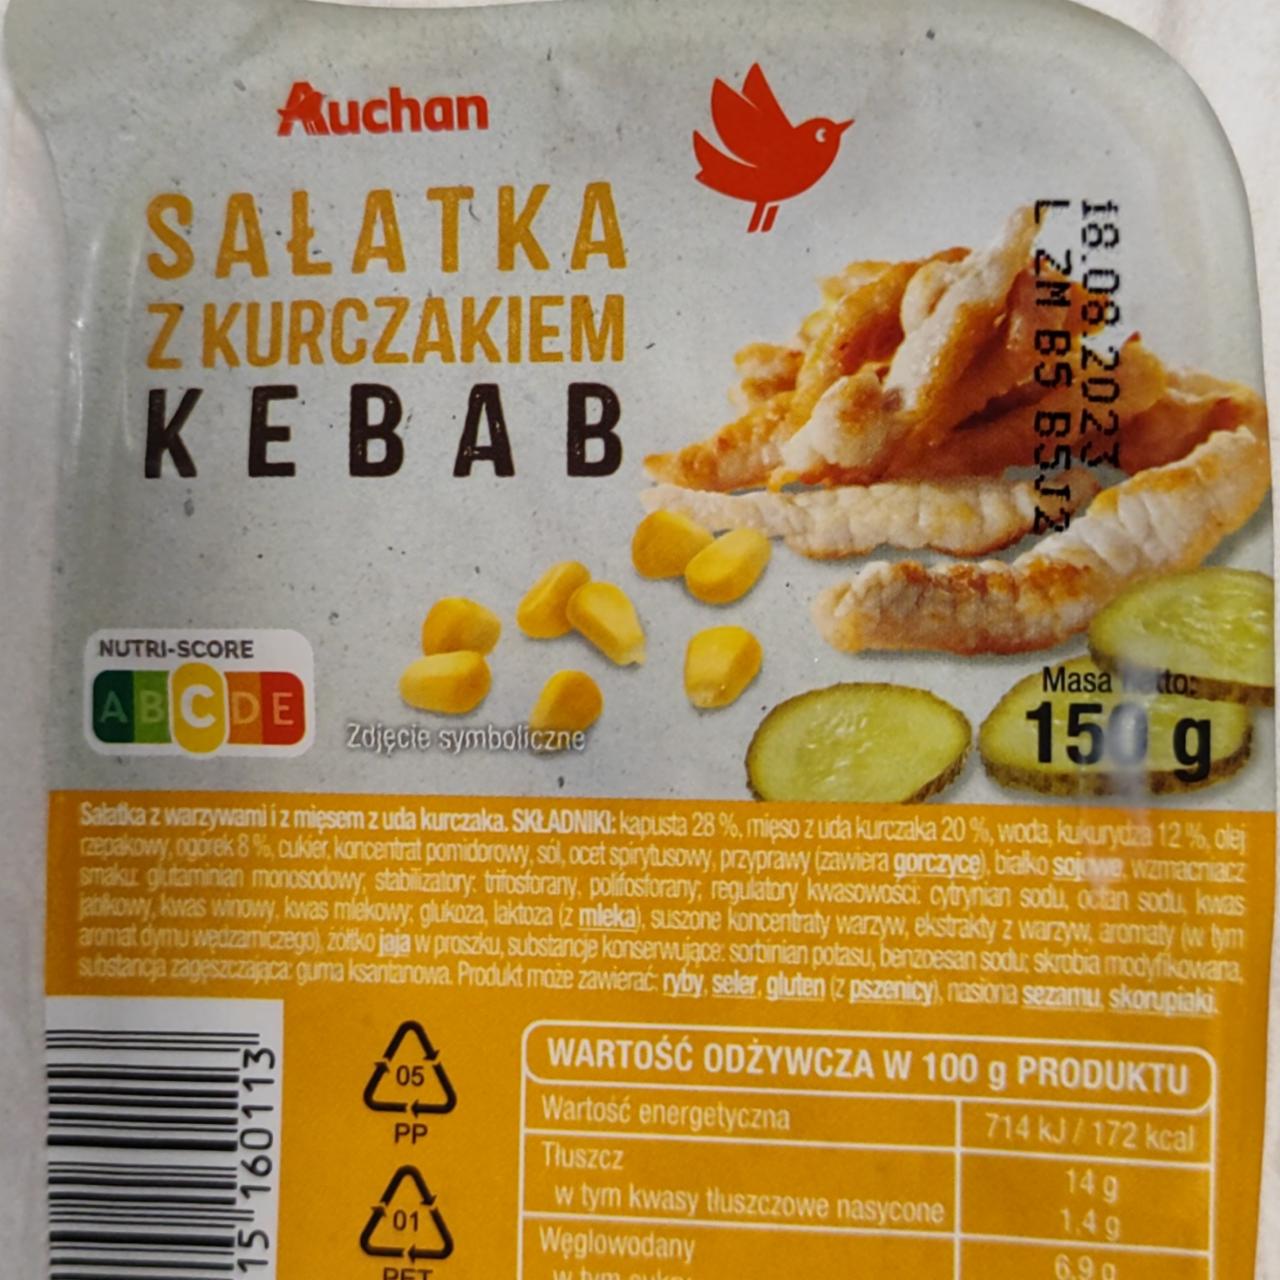 Zdjęcia - Sałatka z kurczakiem kebab Auchan